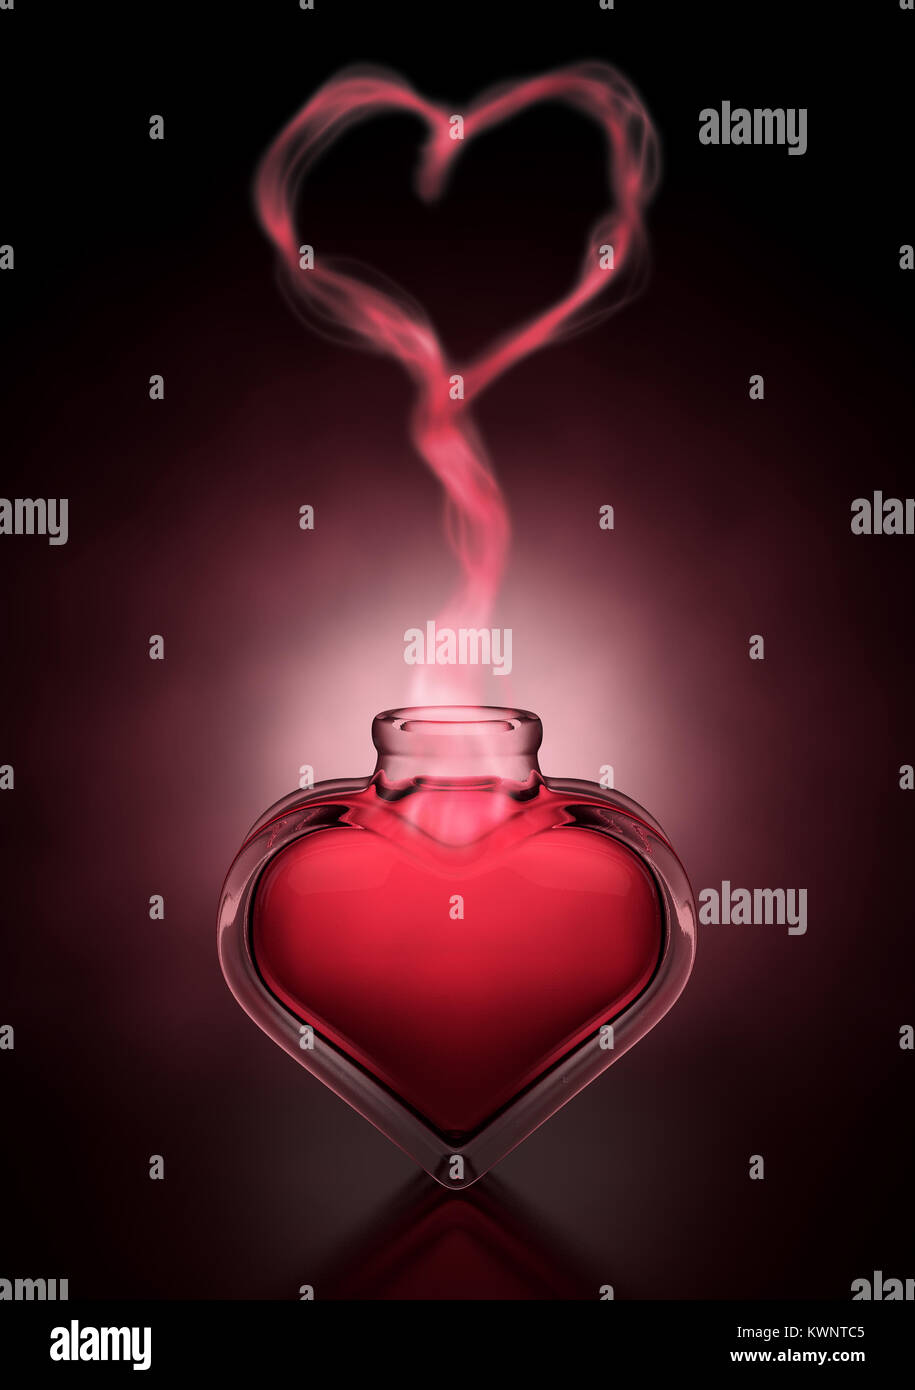 Eine liebe Konzept einen roten Trank in ein offenes Herz geformten Flasche und Dampf steigt ein Herz darüber zu bilden - 3D-Rendering Stockfoto